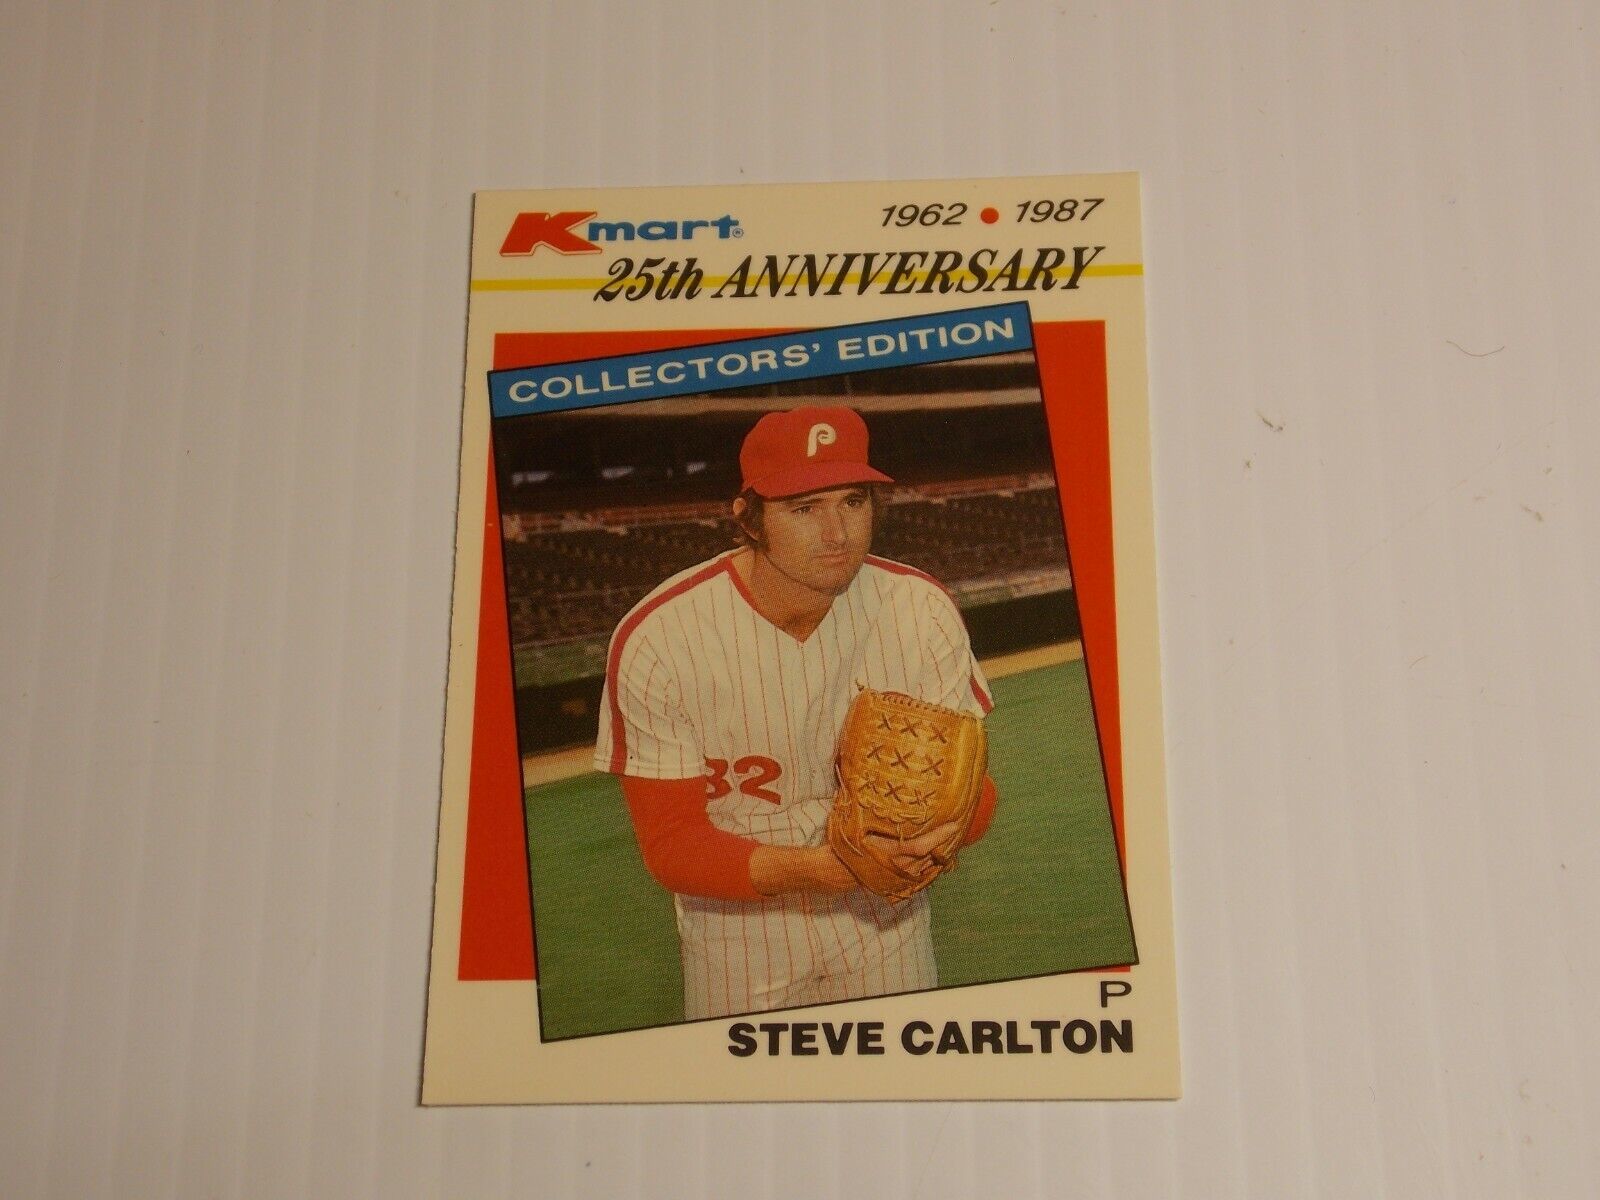 Primary image for 1987 Topps Kmart 25th Anniversary Steve Carlton #15 Philadelphia Phillies